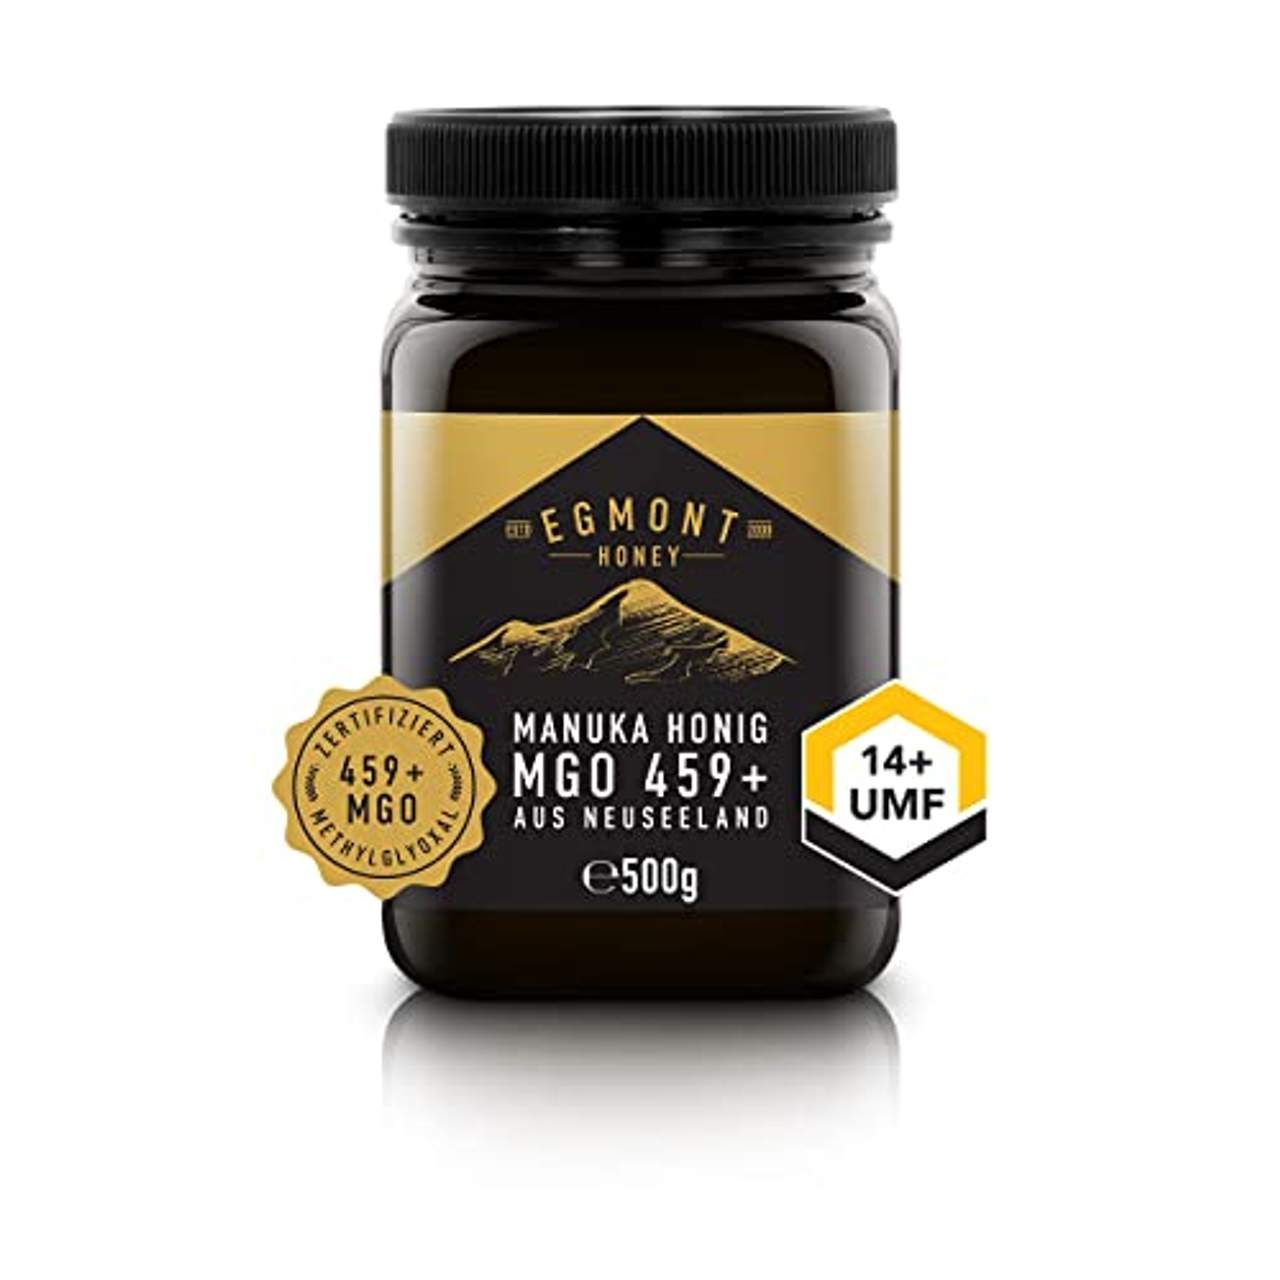 Egmont Honey Manuka-Honig 450+ MGO original aus Neuseeland UMF 14+